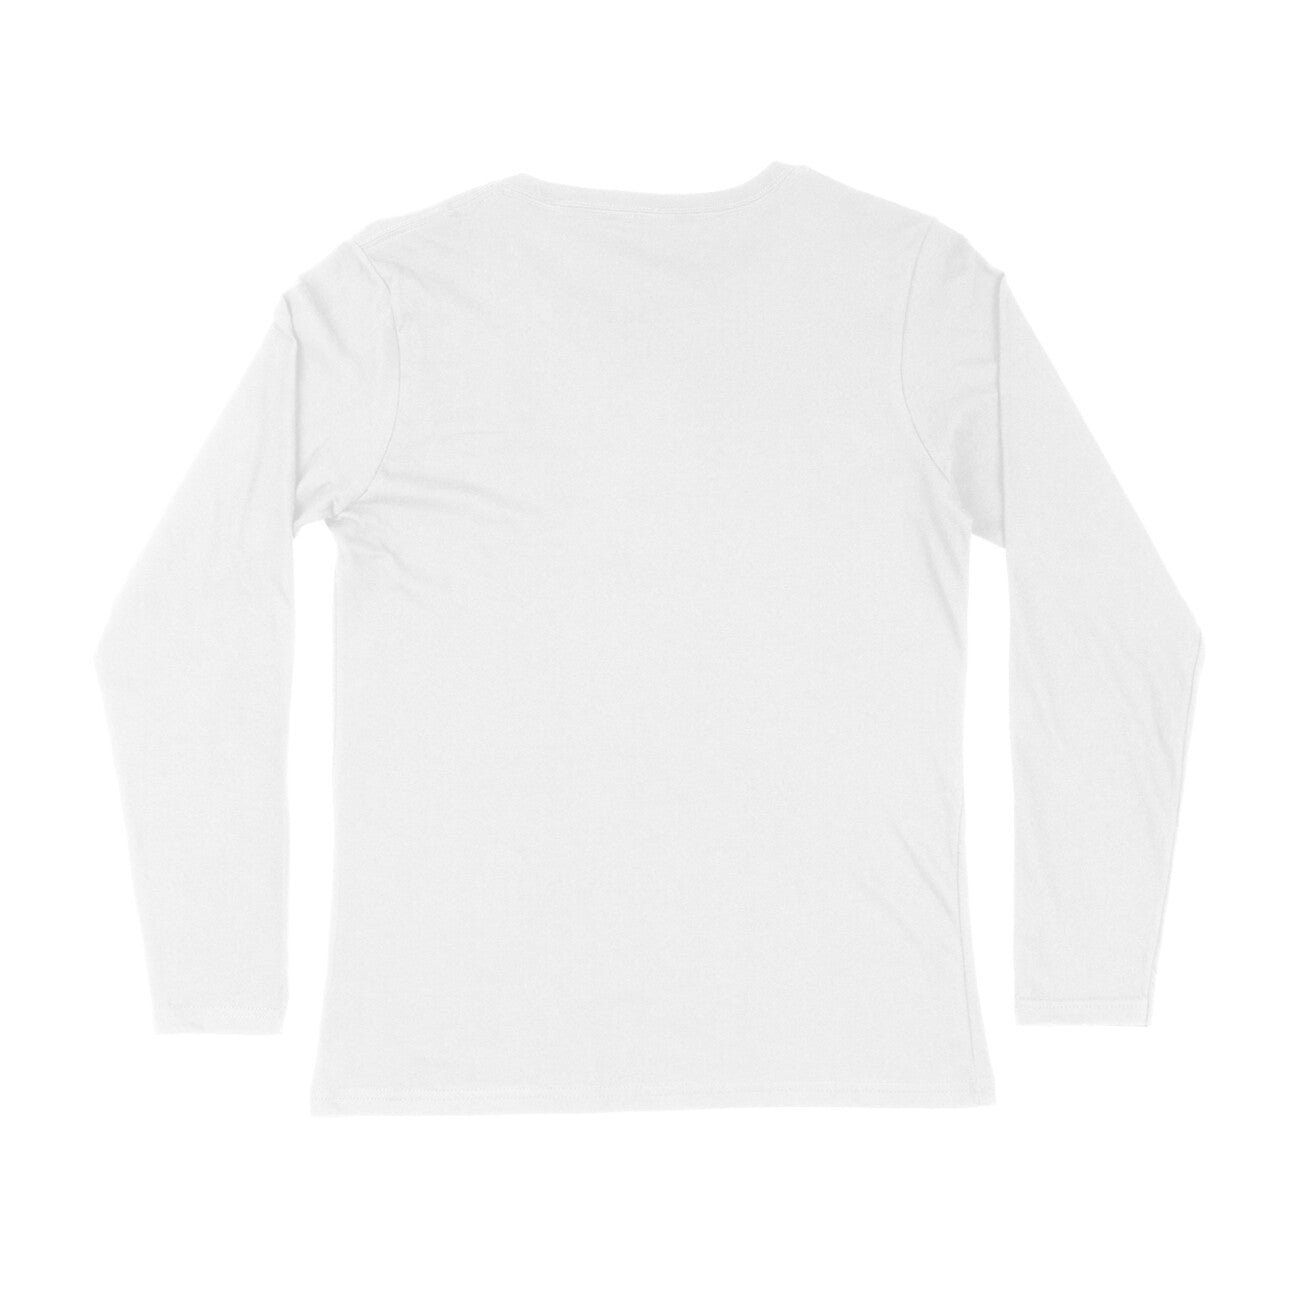 Men's White Full Sleeve T-shirt